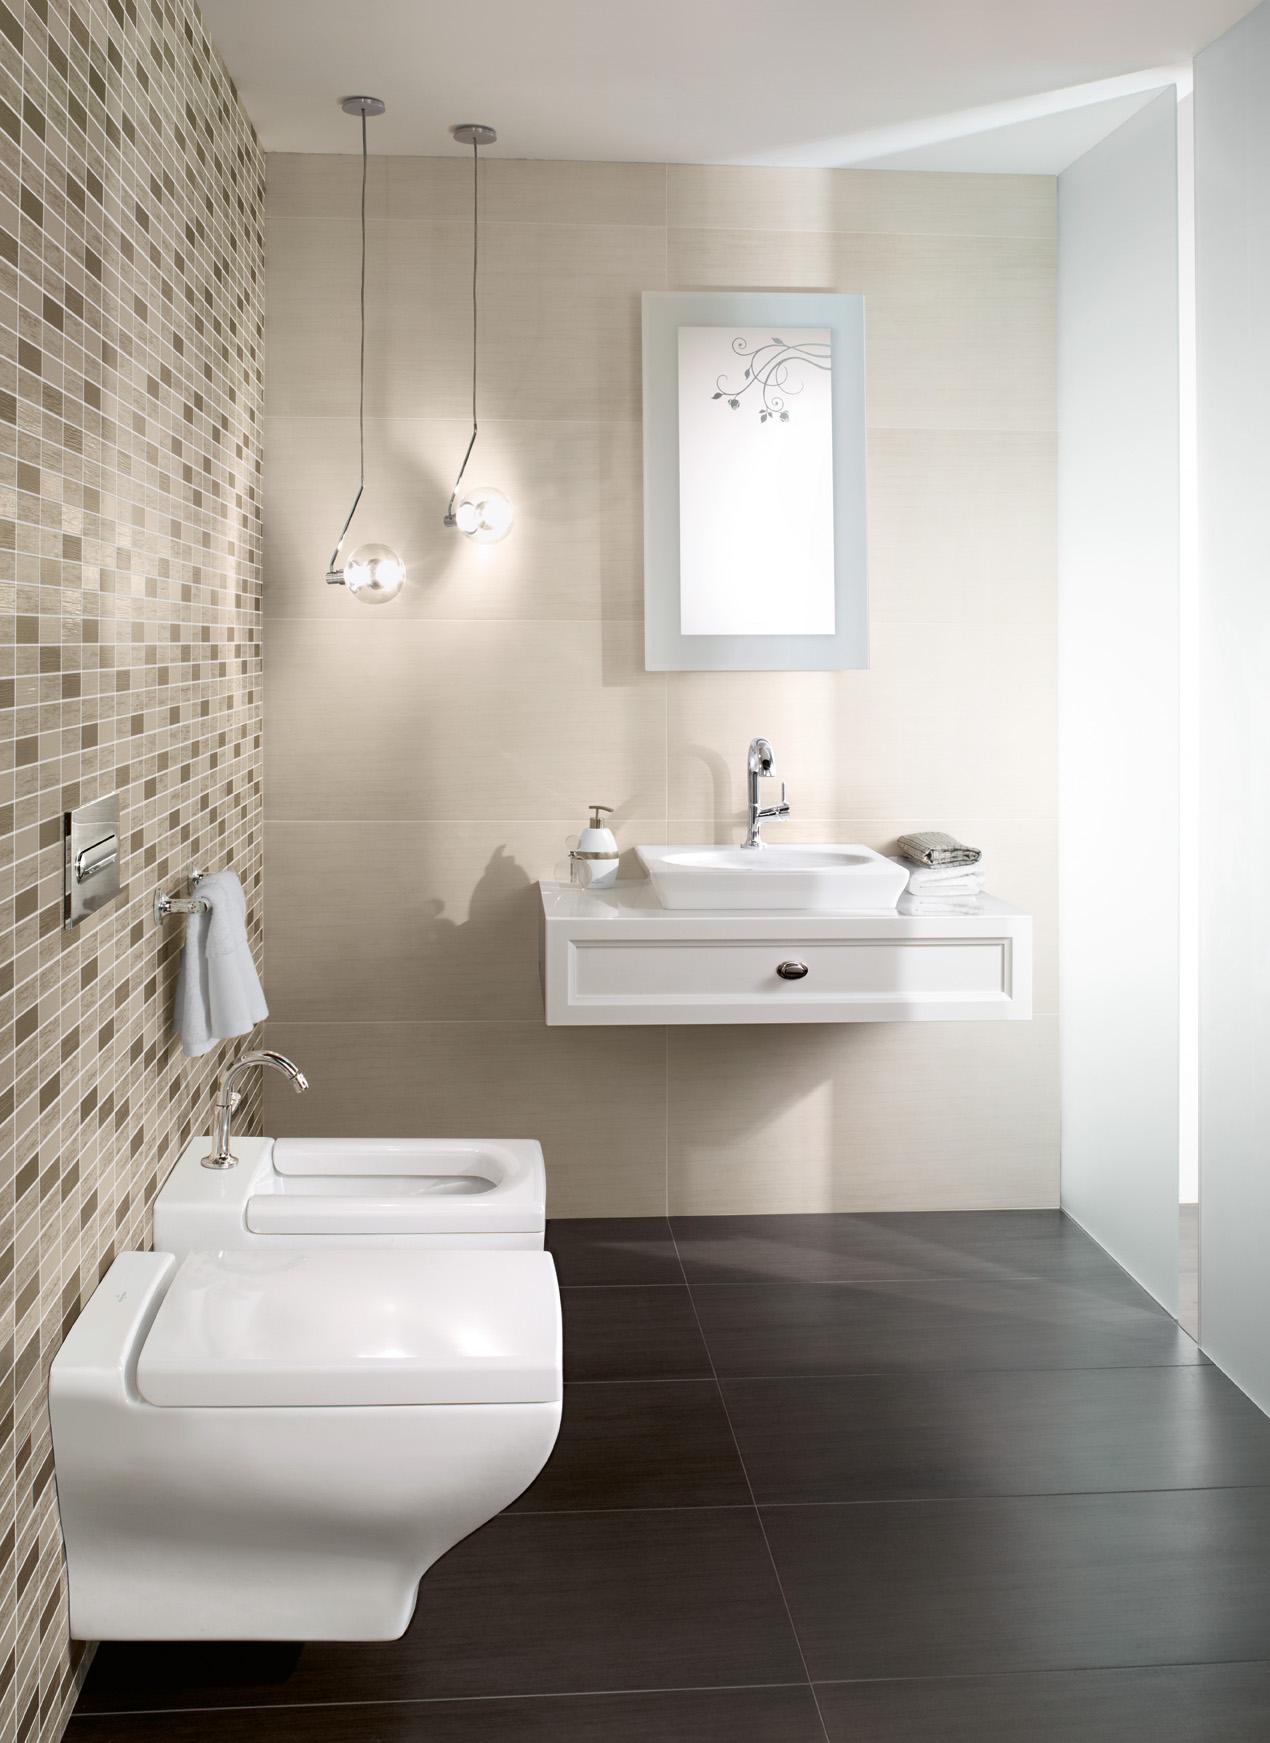 Beigefarbene Mosaikfliesen im Badezimmer #badezimmer #badezimmereinrichtung ©Villeroy & Boch AG